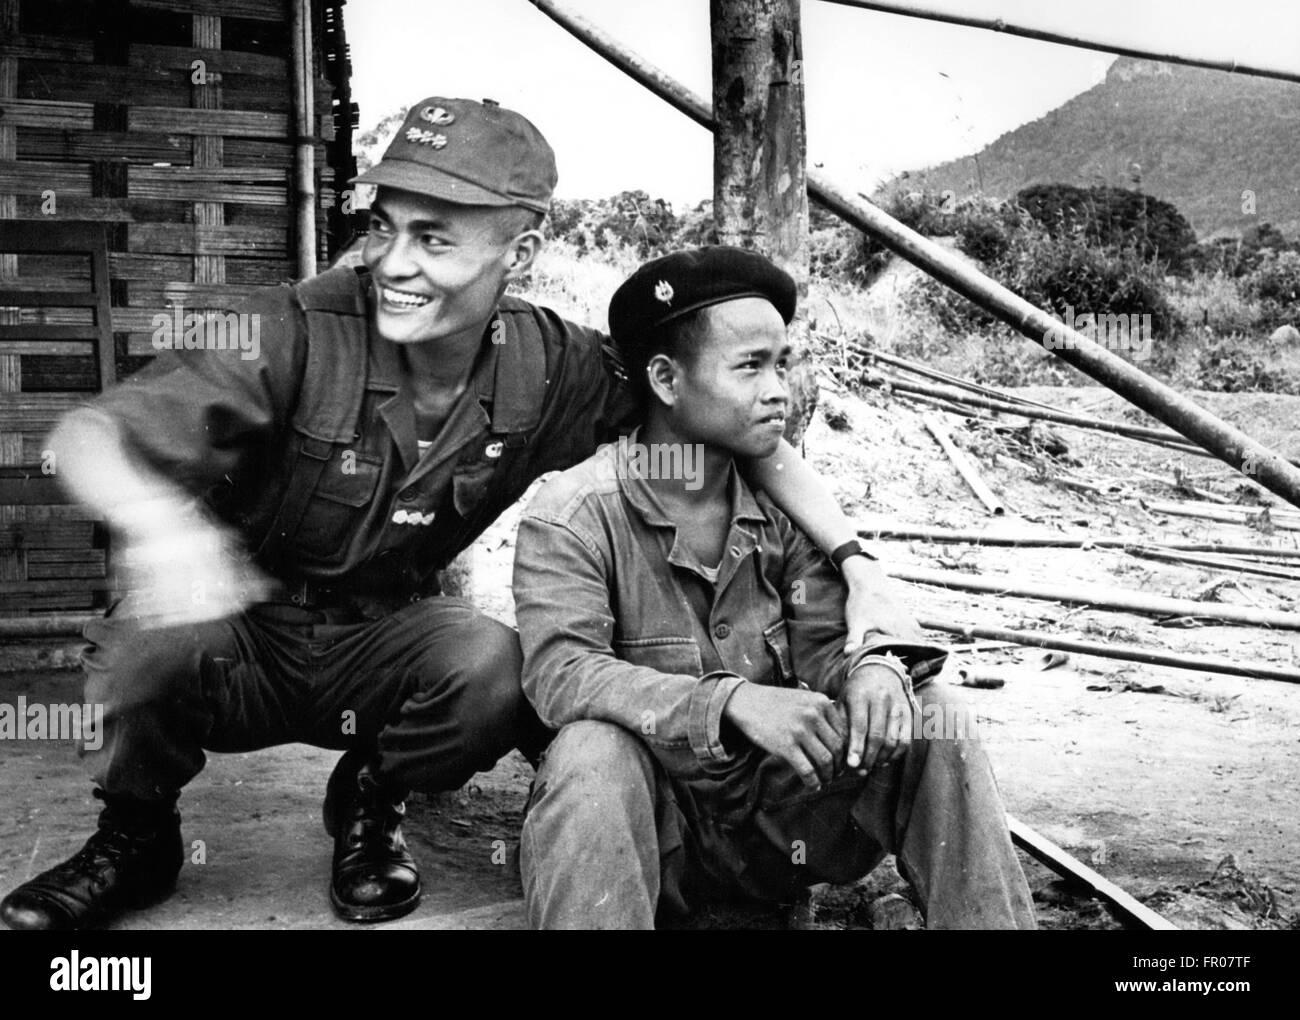 1962 - Le Laos. La spéculation persiste à Saigon que les troupes du gouvernement sud-vietnamien va former une alliance avec les troupes d'ajo de droite et à travers la jungle montagneuse au Laos. Ces photo show un capitaine sud-vietnamiens en fatigues et baseball-comme cap) et de l'action citoyenne sud-vietnamiens avec des filles soldats Lao (en bérets bordeaux) © Keystone Photos USA/ZUMAPRESS.com/Alamy Live News Banque D'Images